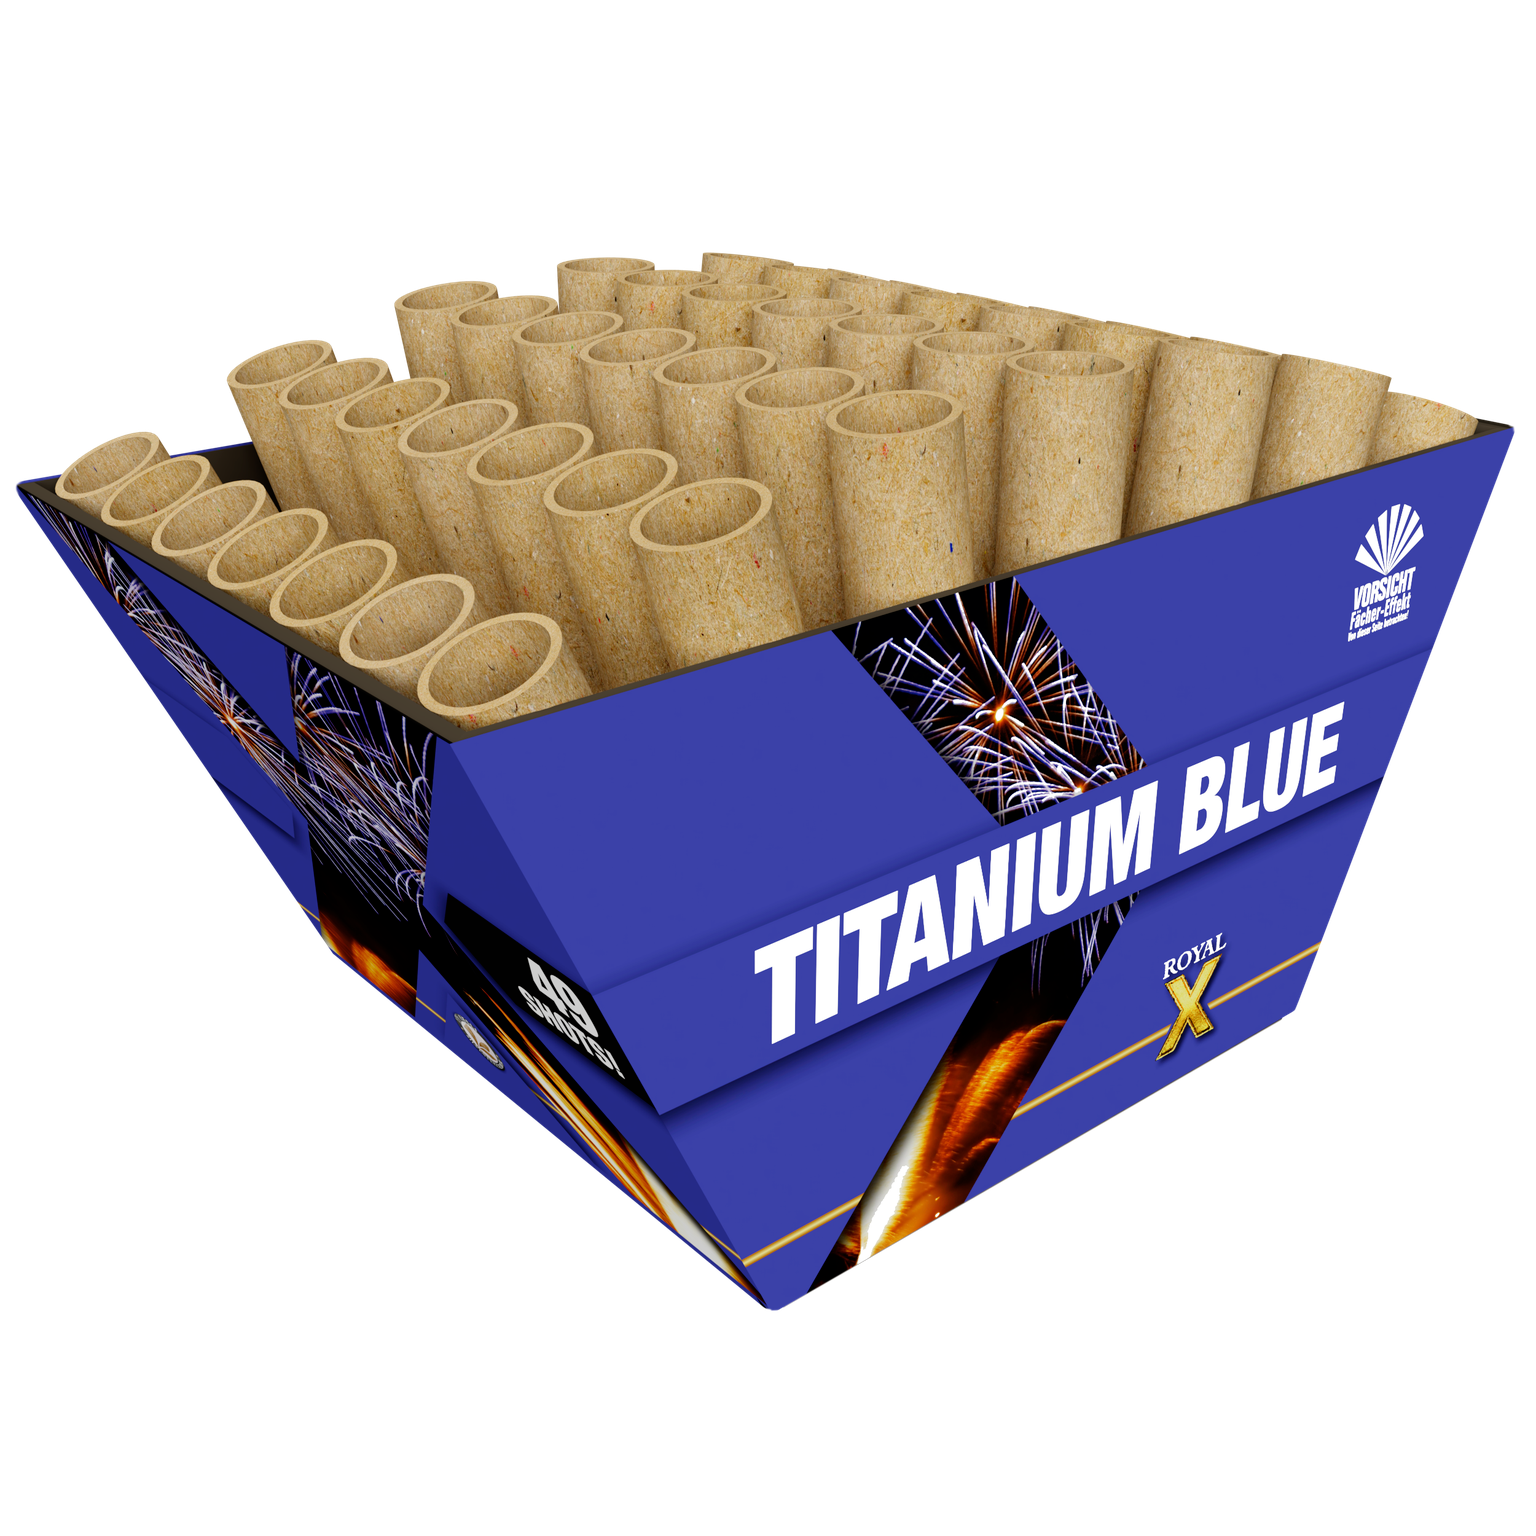 4921-titanium-blue-ve-carton-lesli_a1358af3-b91c-46f1-9241-5401e2c697b5.png